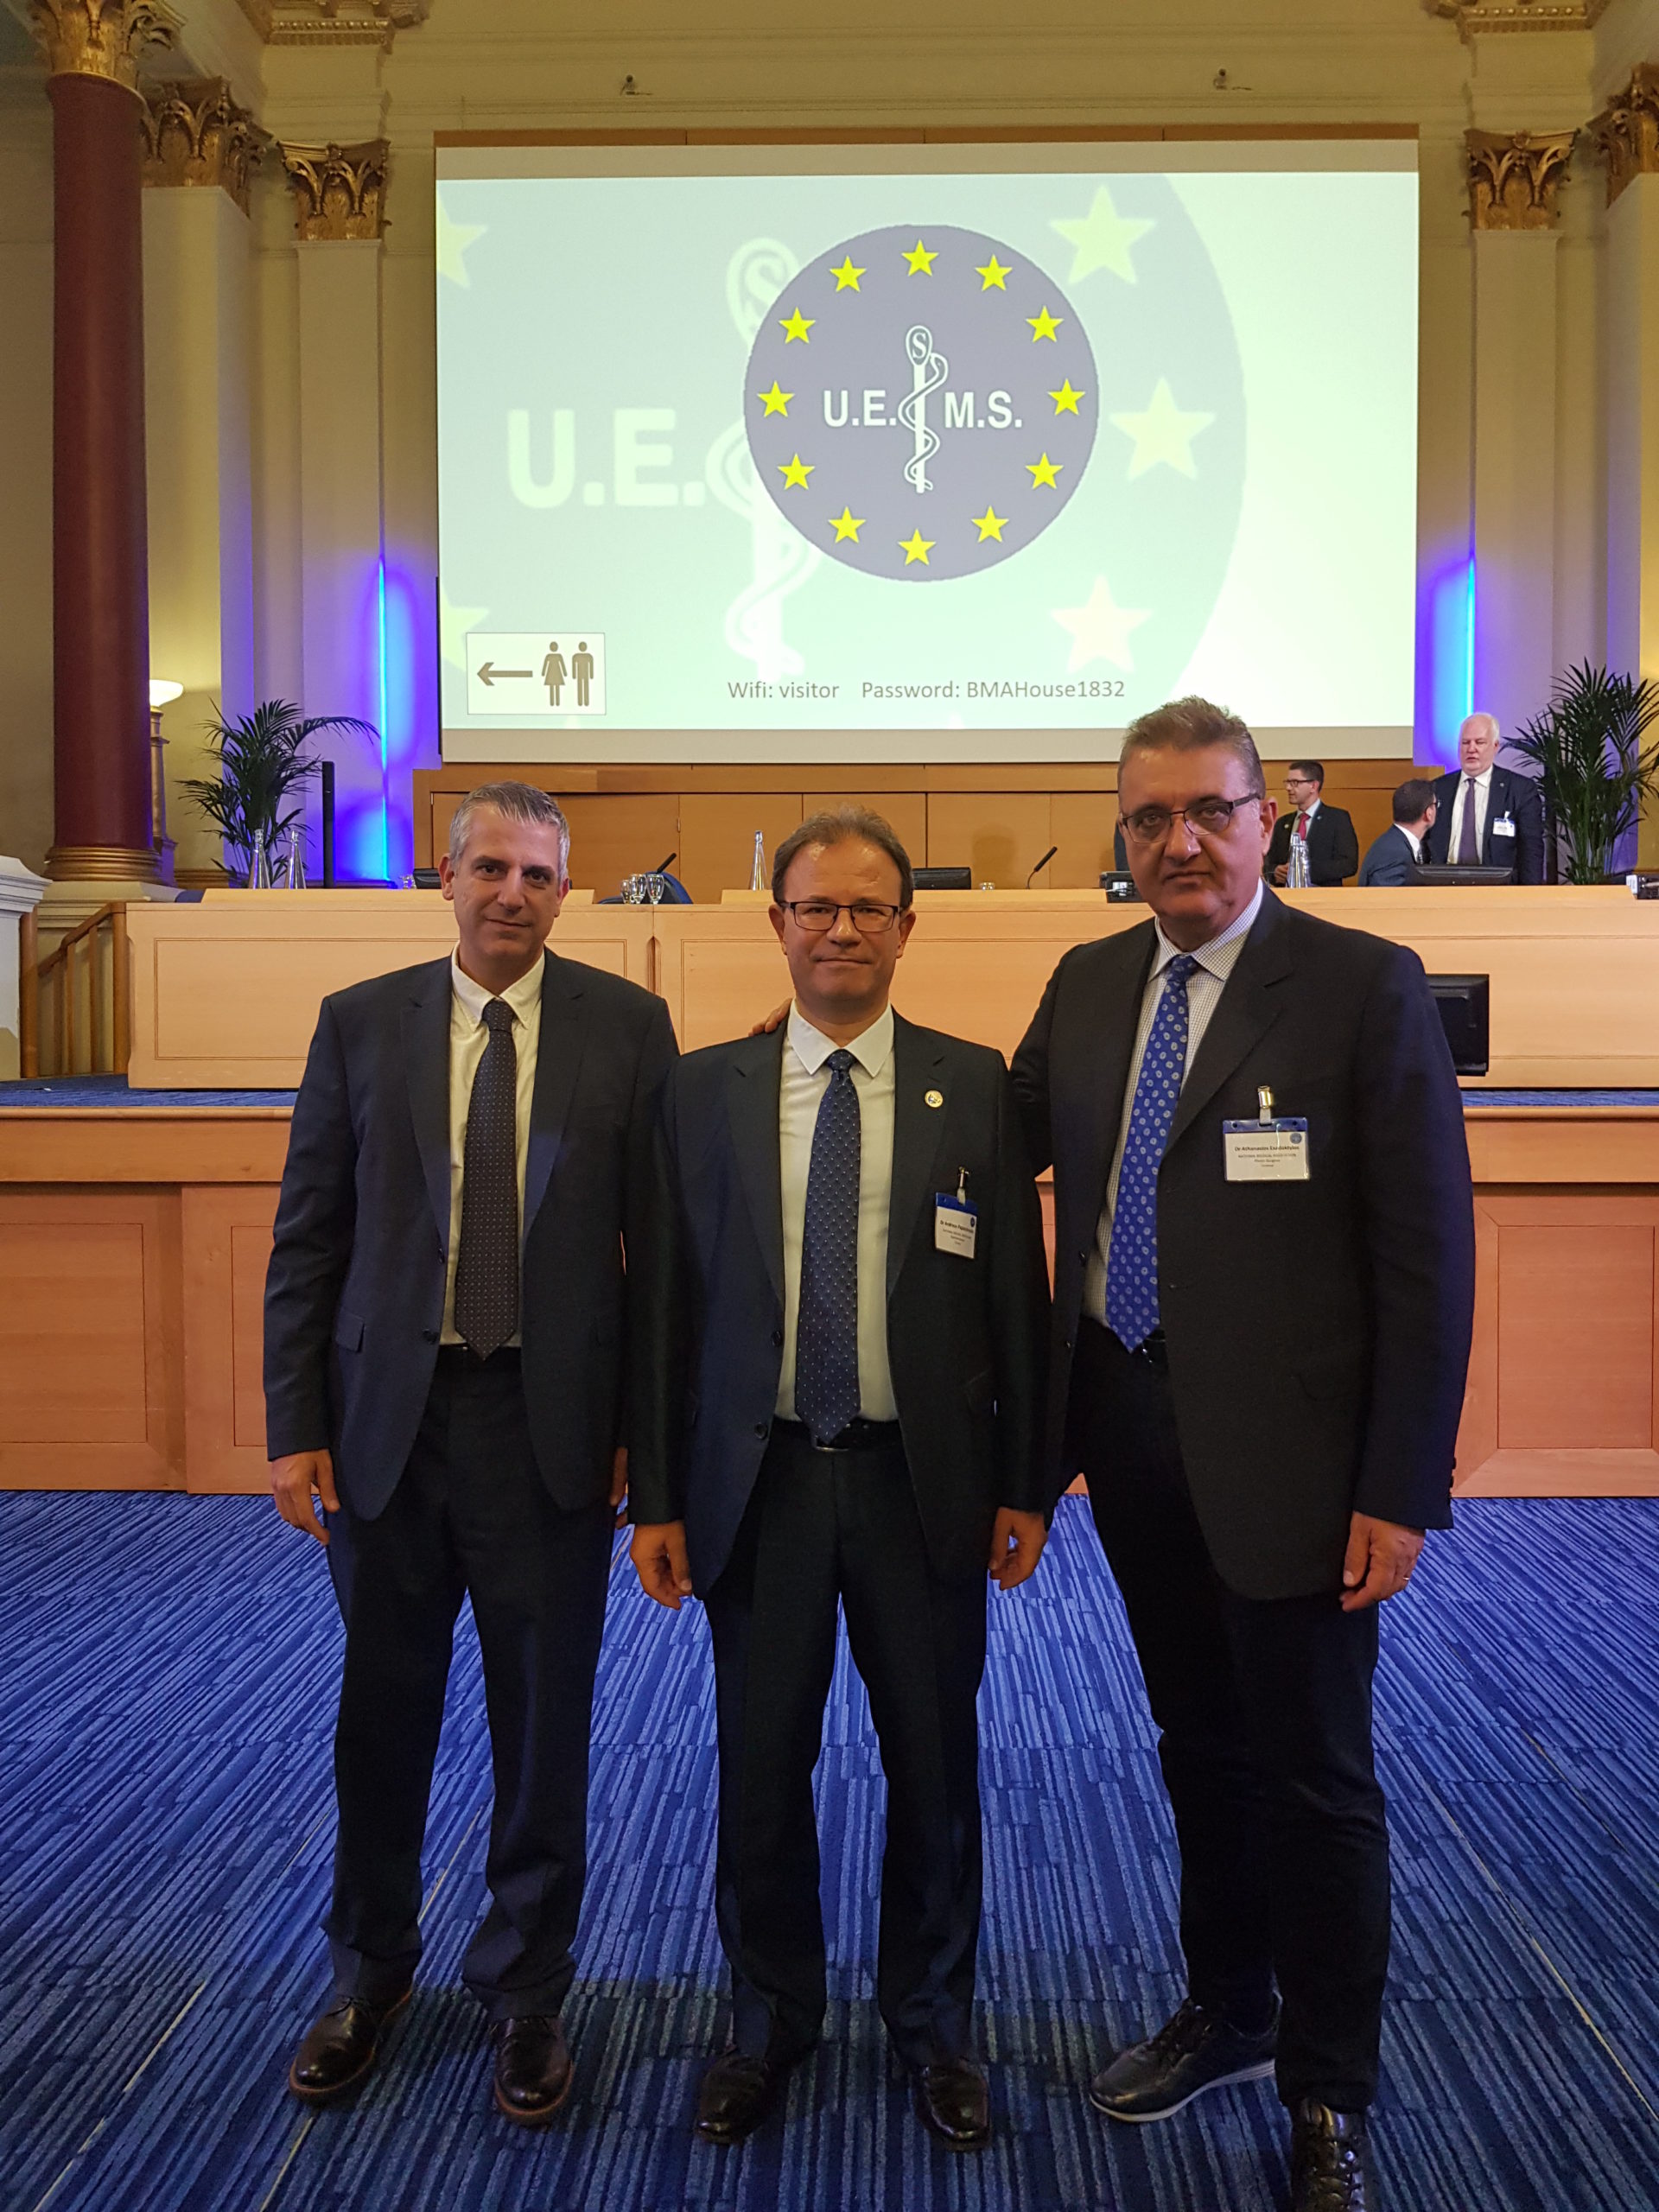 Αναφορά Εκπροσώπων Π.Ι.Σ. από τη συνεδρίαση του Συμβουλίου της UEMS (UEMS Council), Λονδίνο, Ην. Βασίλειο, 18-19/10/2019